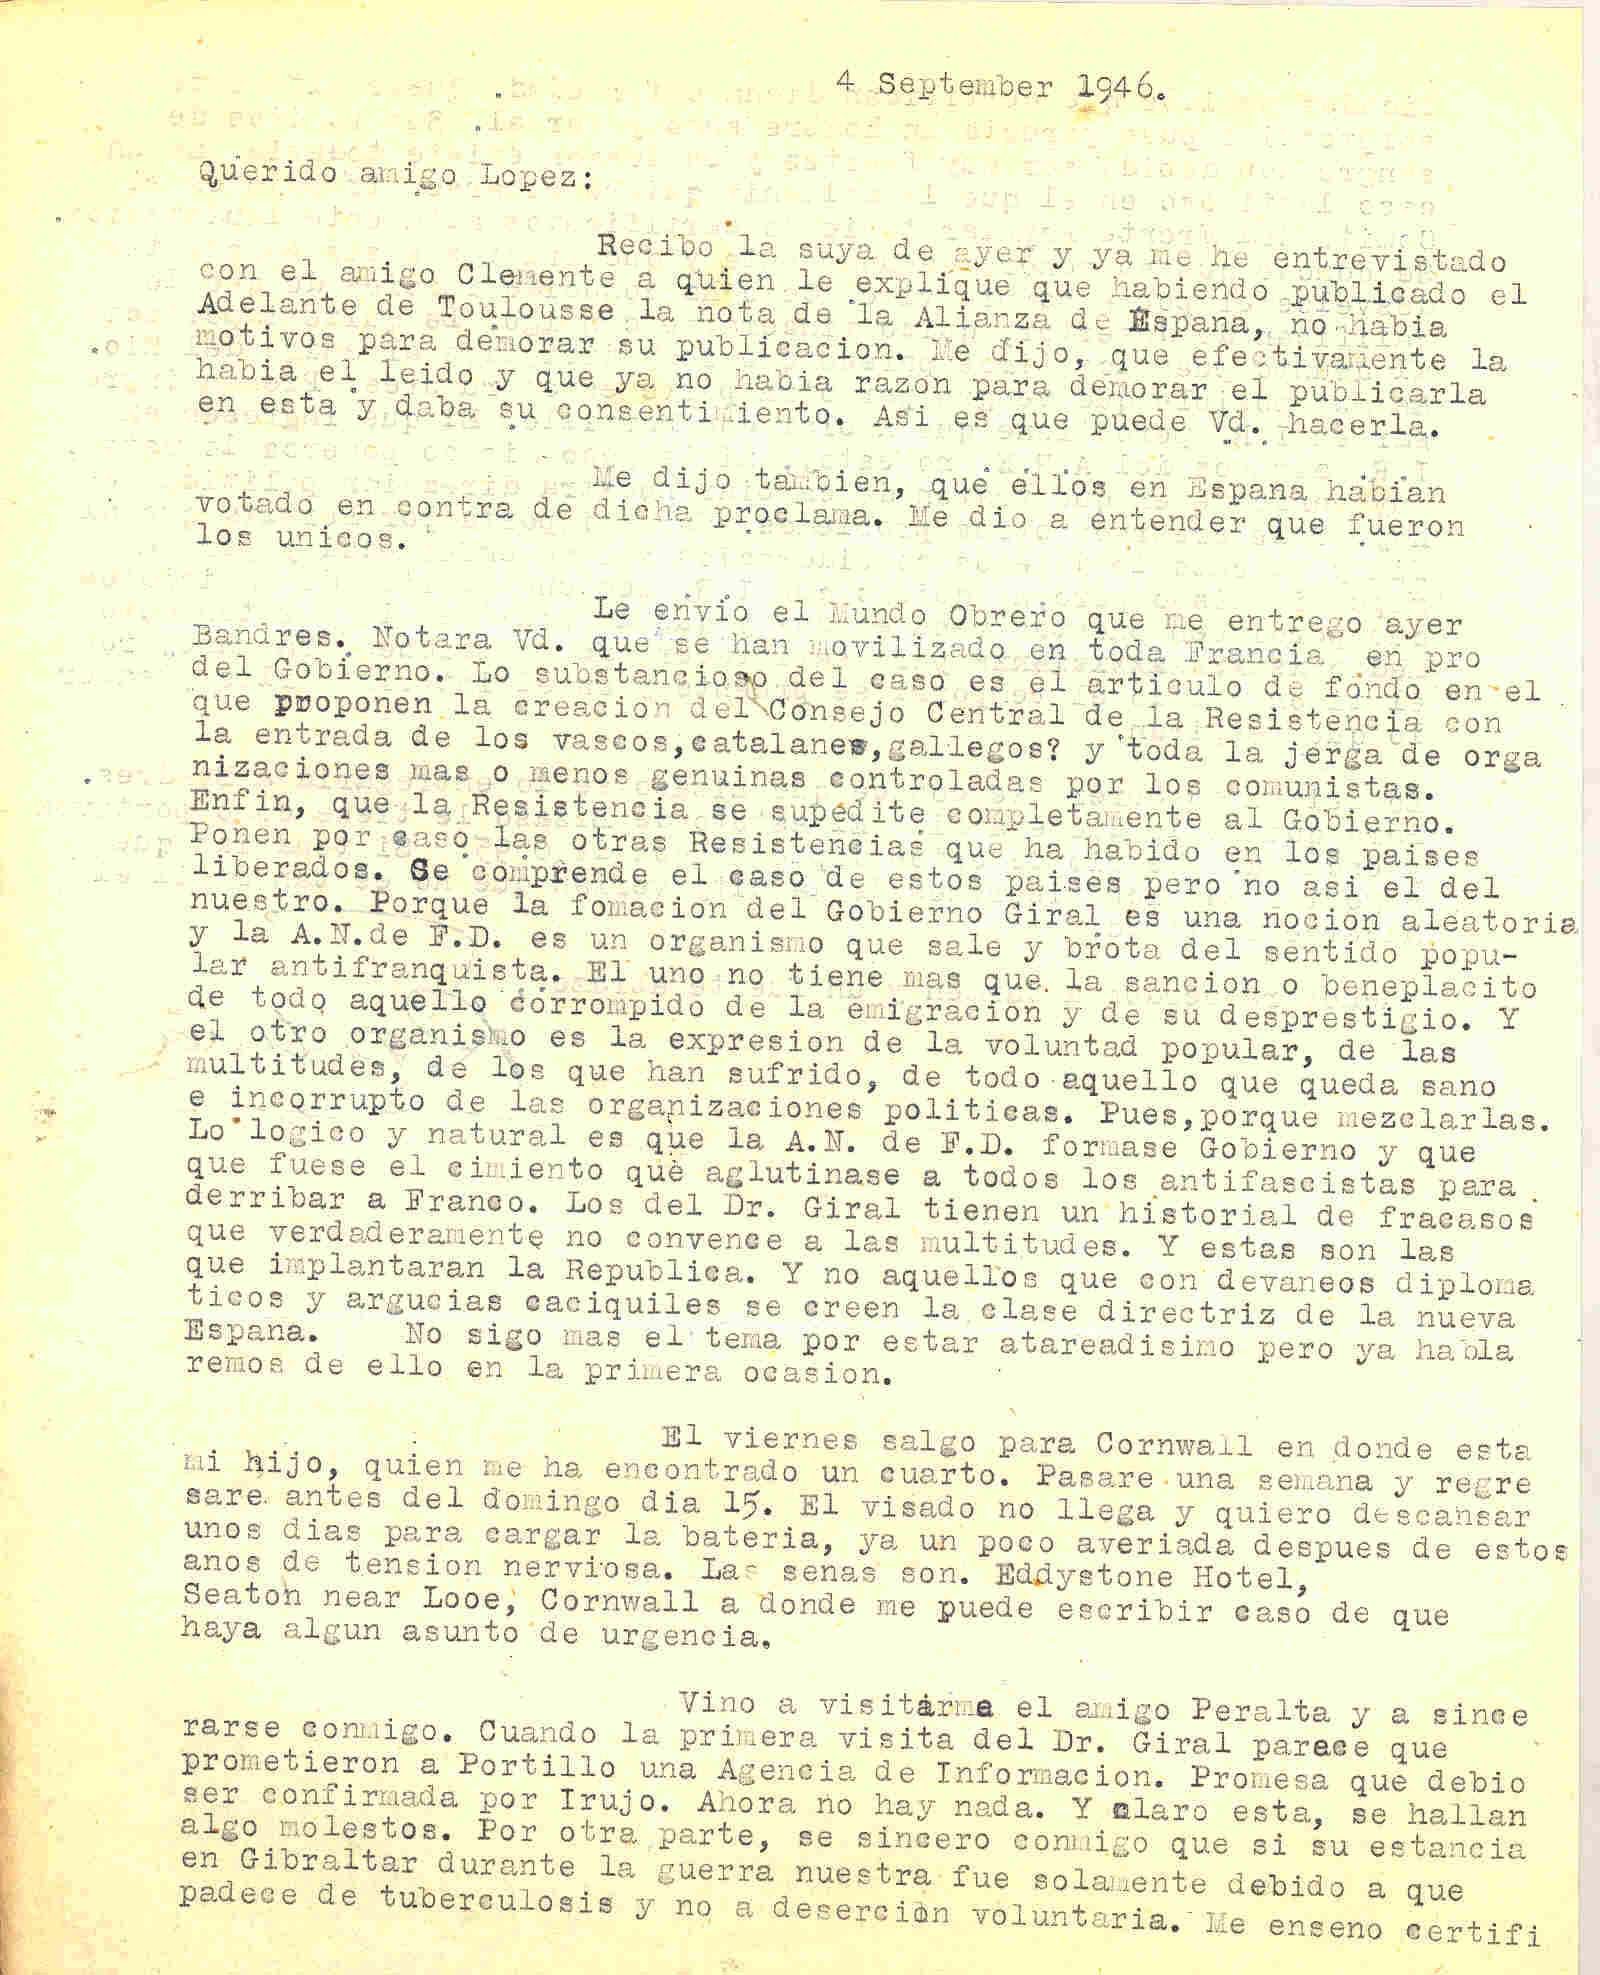 Carta de Roque Victoria en la que habla del desprestigio del gobierno Giral y que la ANFD debería formar gobierno para derribar a Franco. También habla de la visita de Peralta.